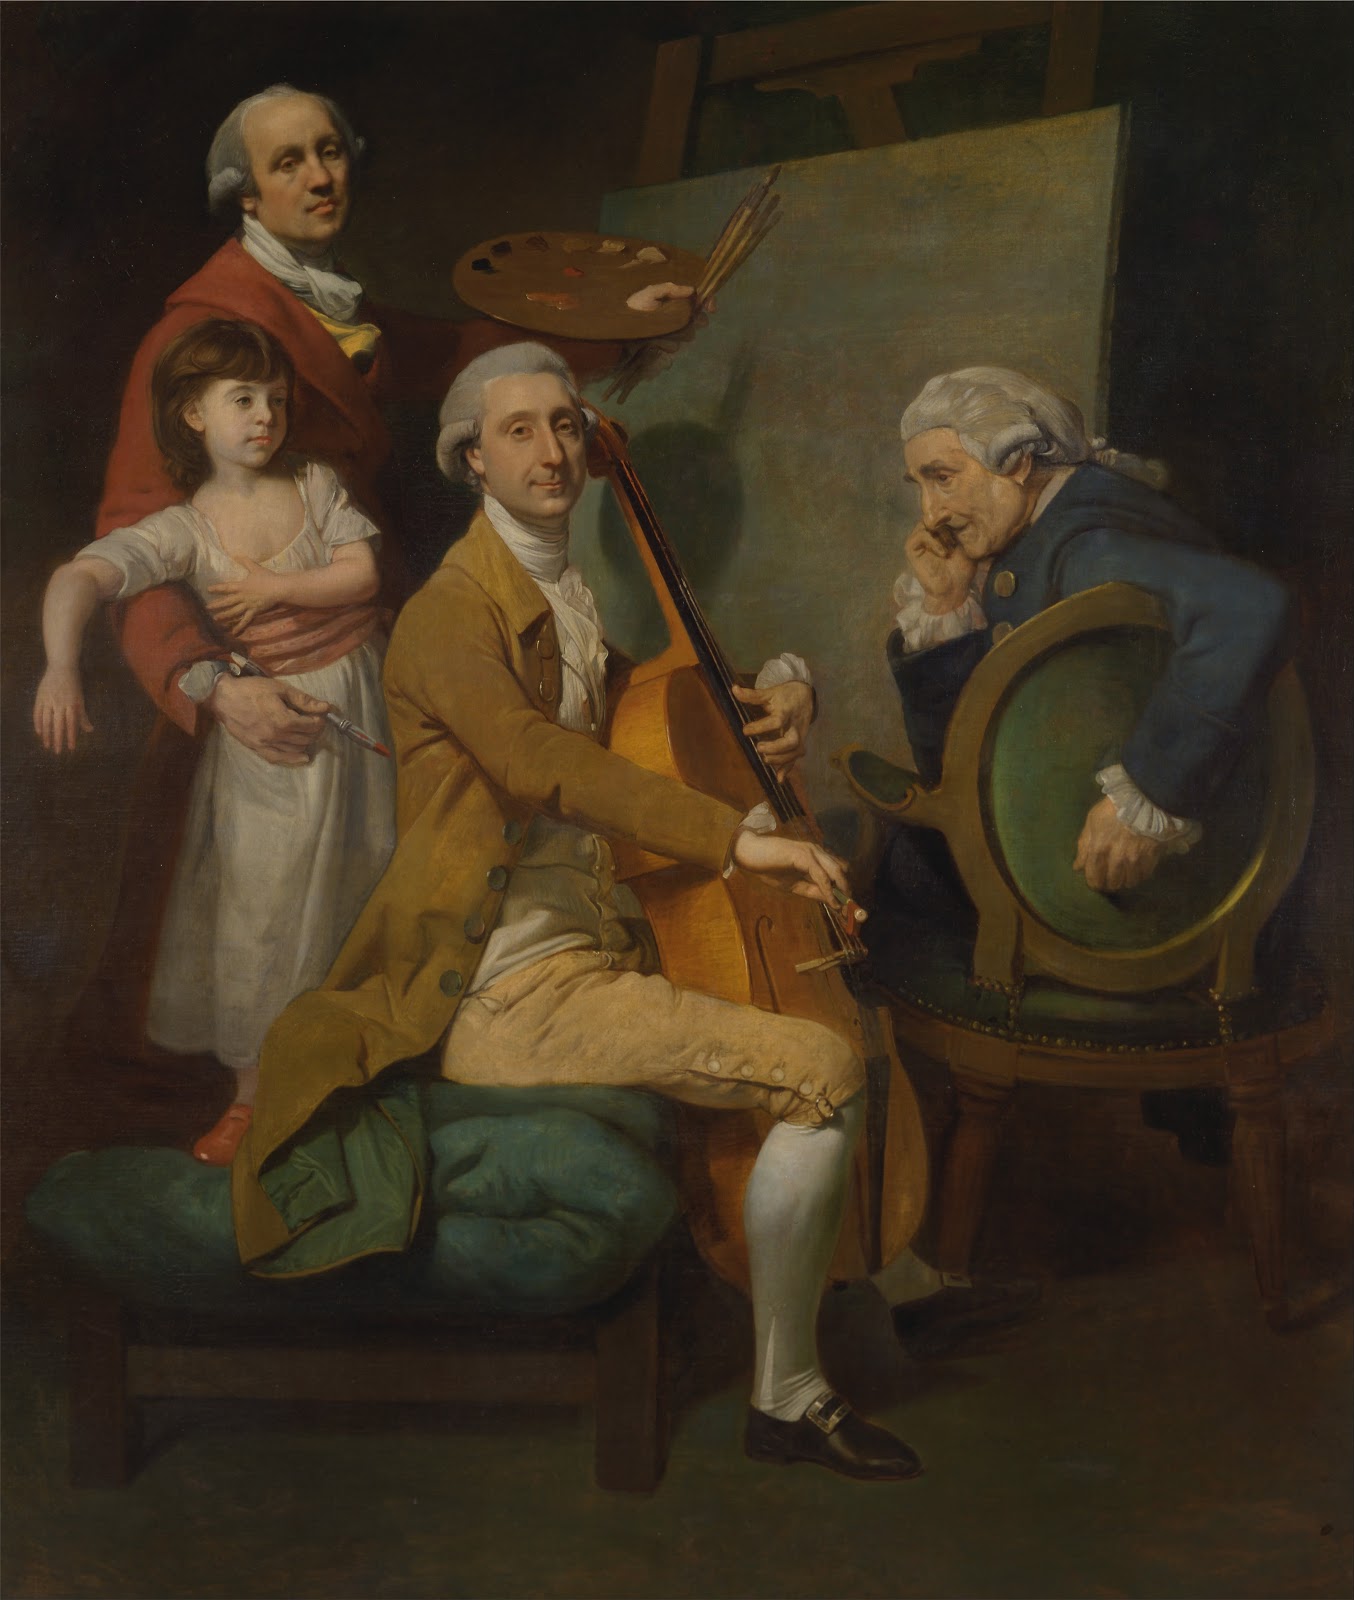 Johan+Zoffany-1733-1810 (20).jpg